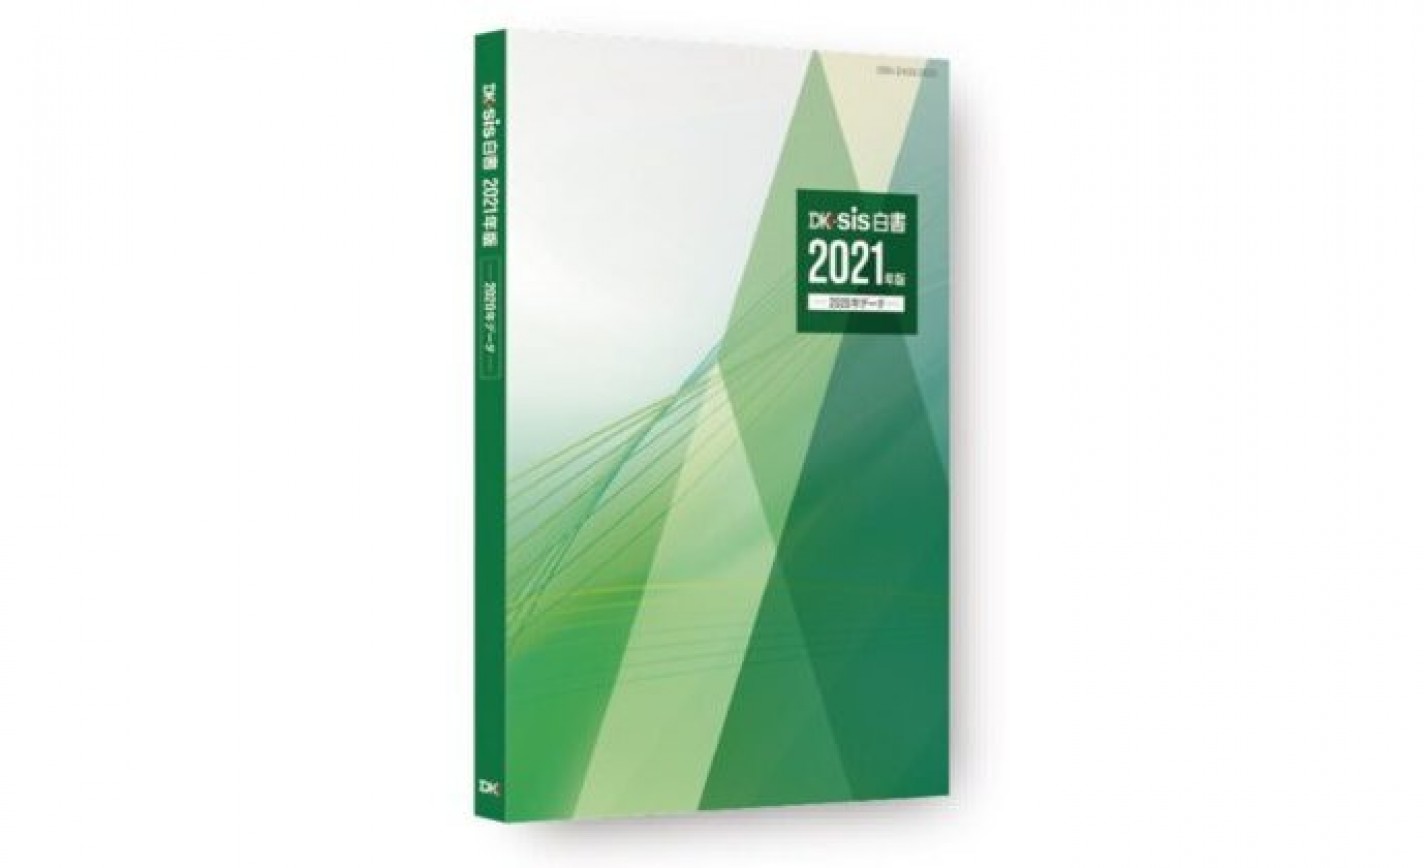 DK-SIS白書2021年版 -2020年データ-～激動の2020年の実態把握に～ eyecatch-image